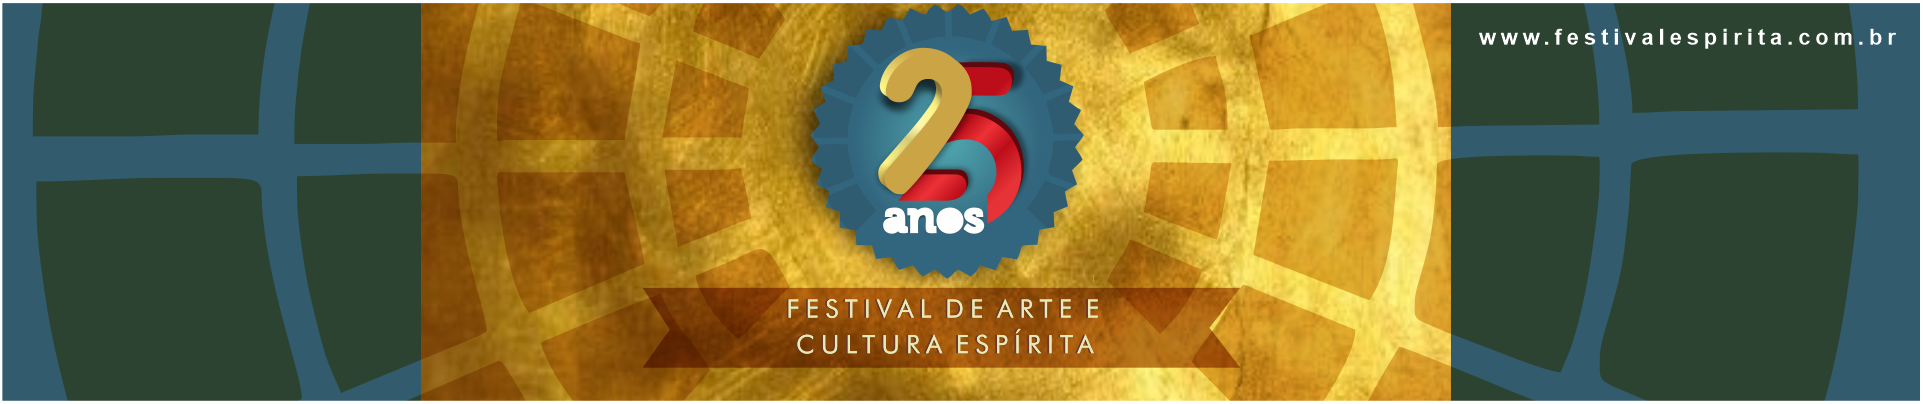 FACE - FESTIVAL DE ARTE E CULTURA ESPÍRITA 1